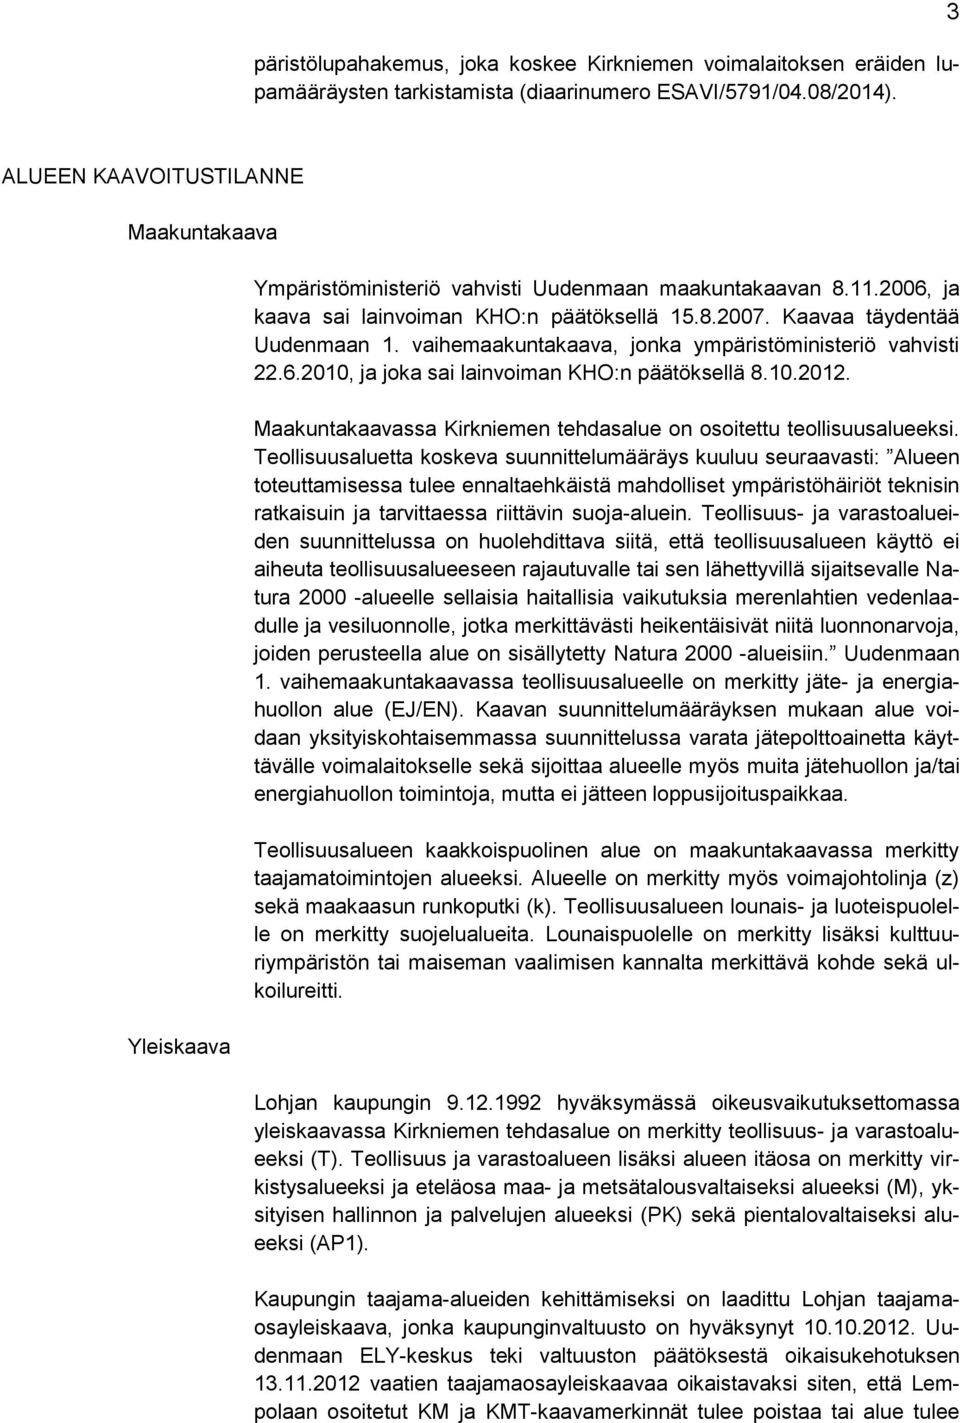 vaihemaakuntakaava, jonka ympäristöministeriö vahvisti 22.6.2010, ja joka sai lainvoiman KHO:n päätöksellä 8.10.2012. Maakuntakaavassa Kirkniemen tehdasalue on osoitettu teollisuusalueeksi.